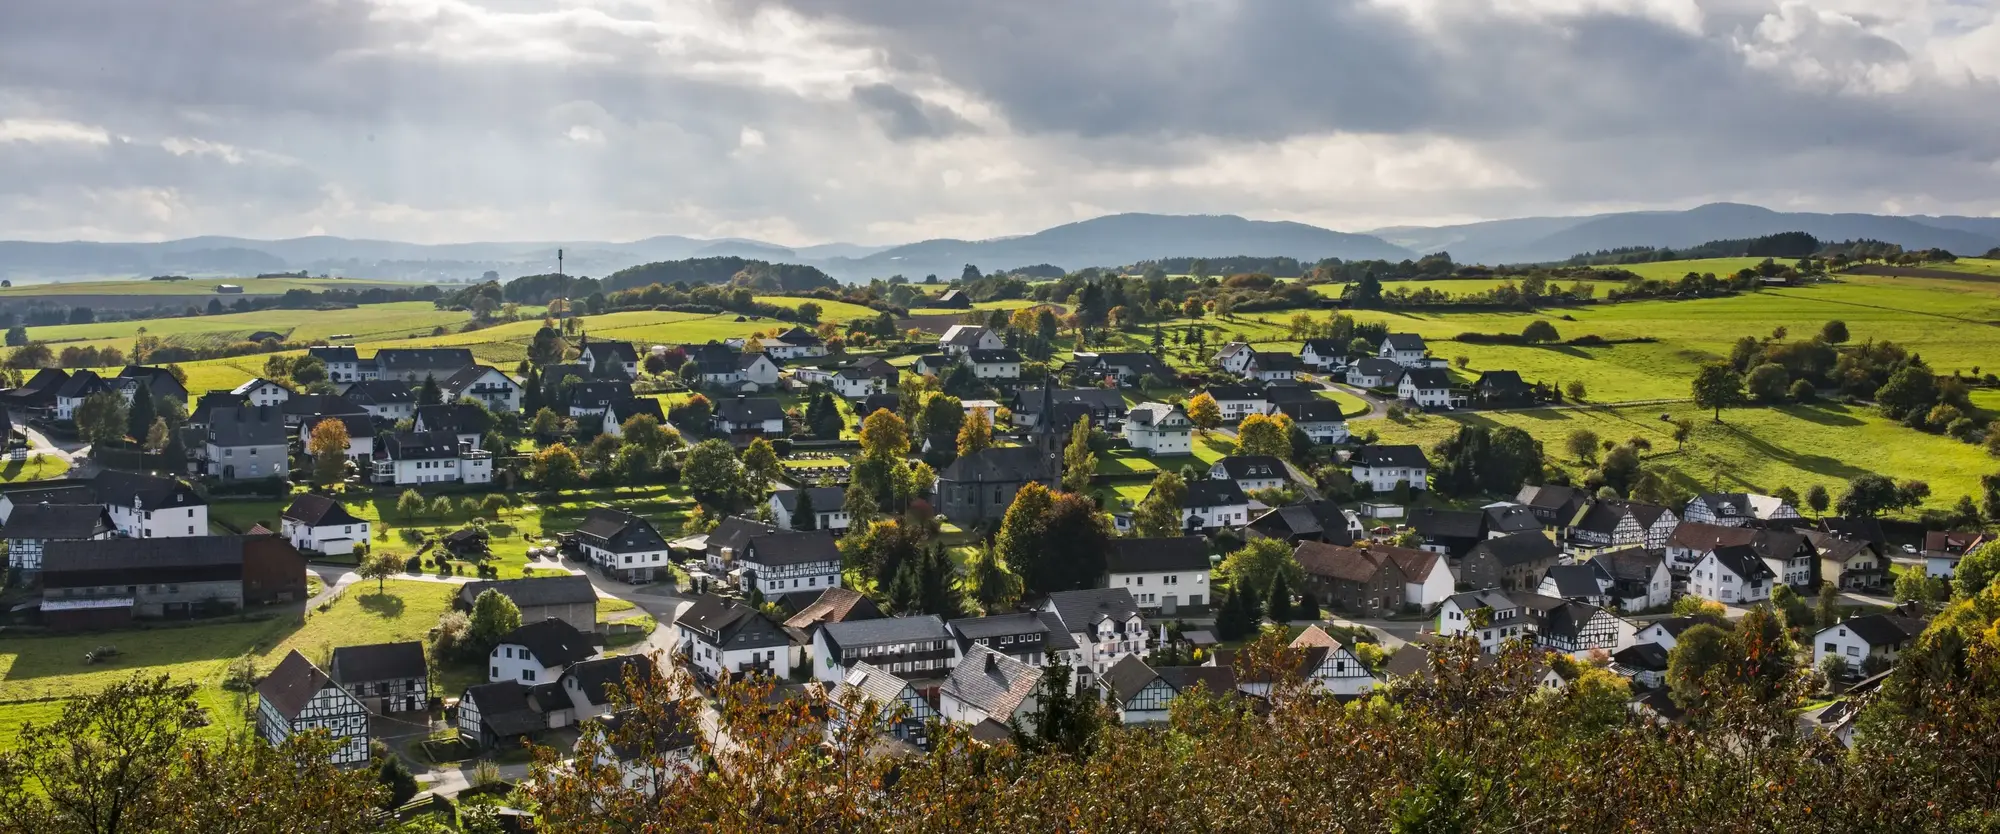 Die Ortschaft Braunshausen inmitten von Bergen, Wiesen und Wäldern.